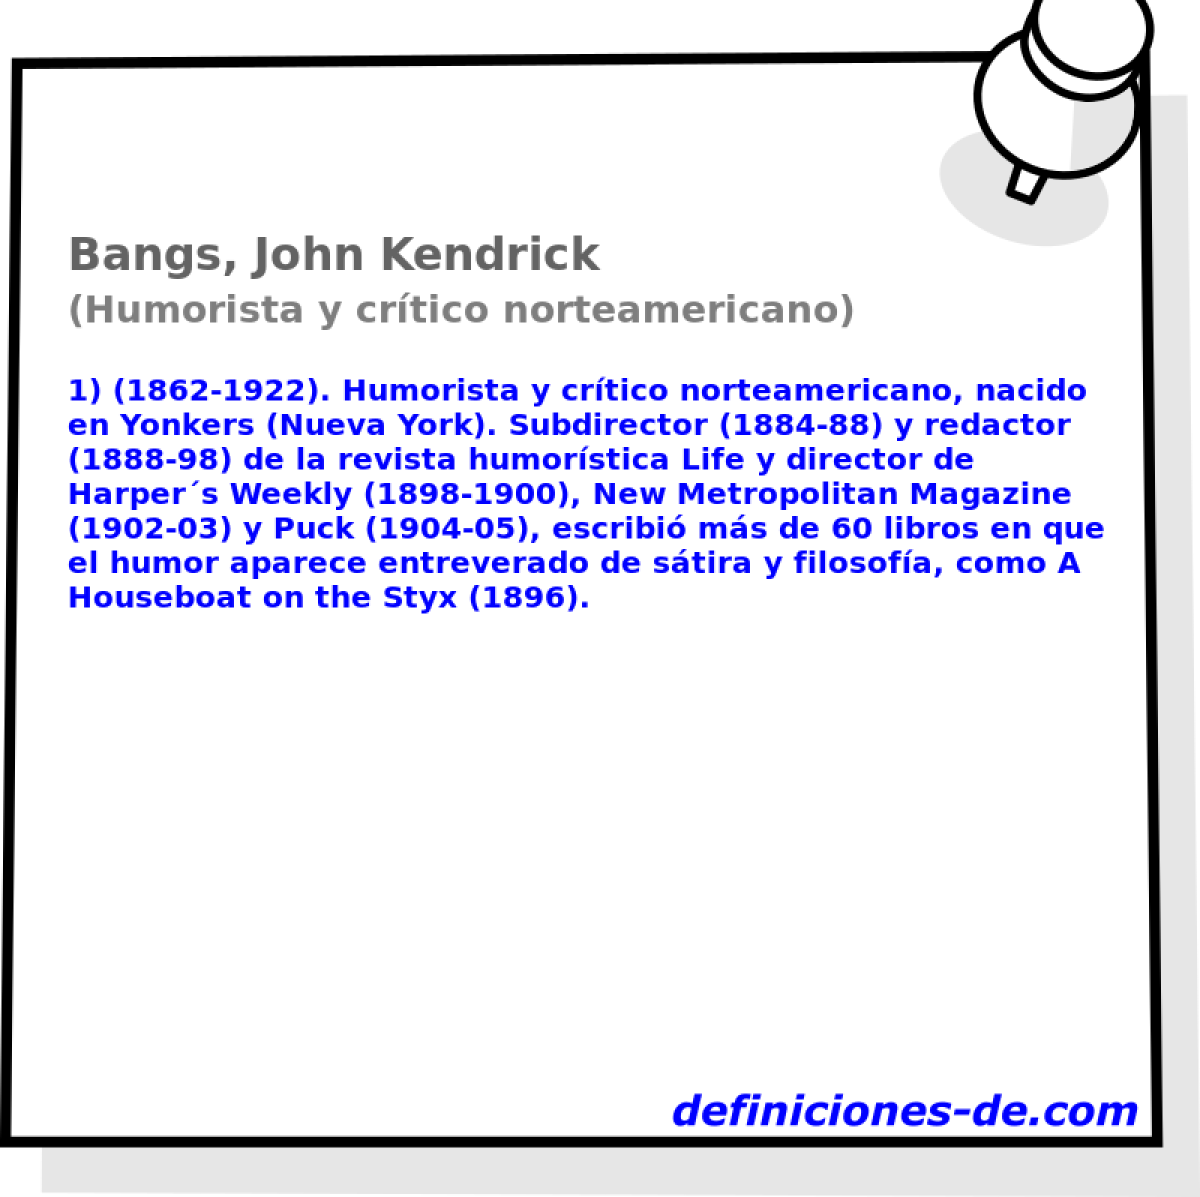 Bangs, John Kendrick (Humorista y crtico norteamericano)